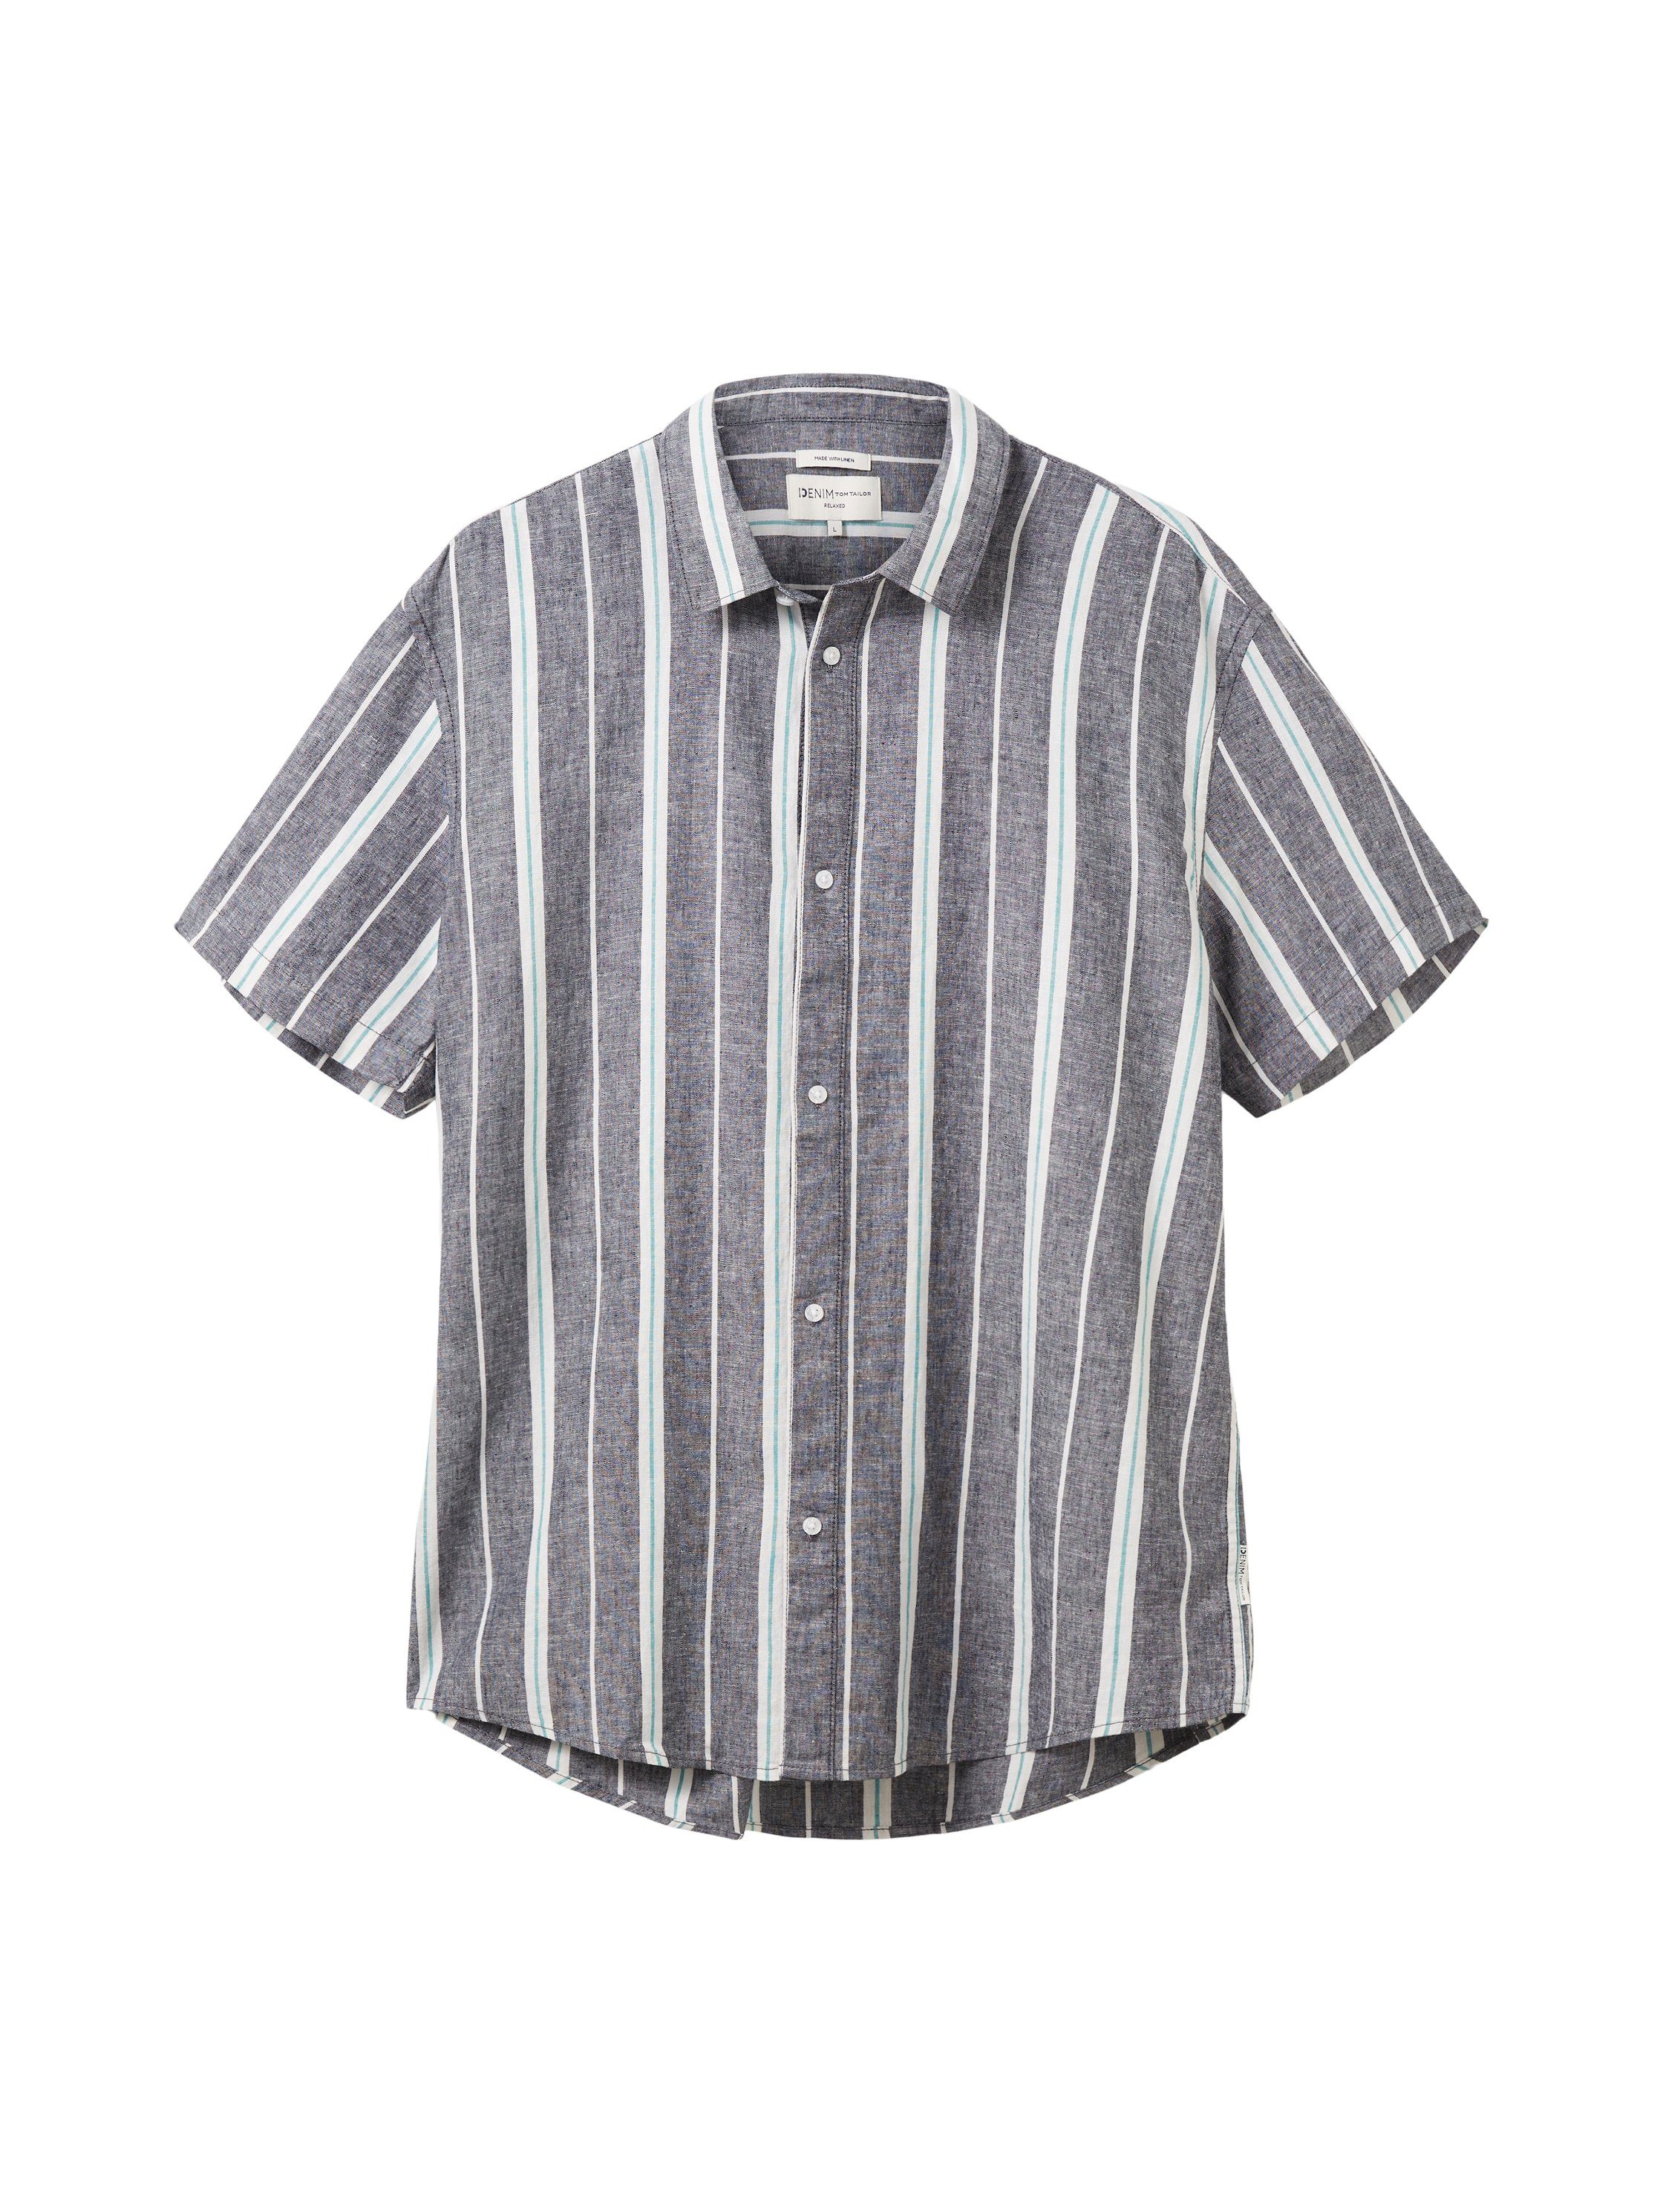 TOM TAILOR Denim Streifenhemd Ärmeln mit grau-weiß kurzen